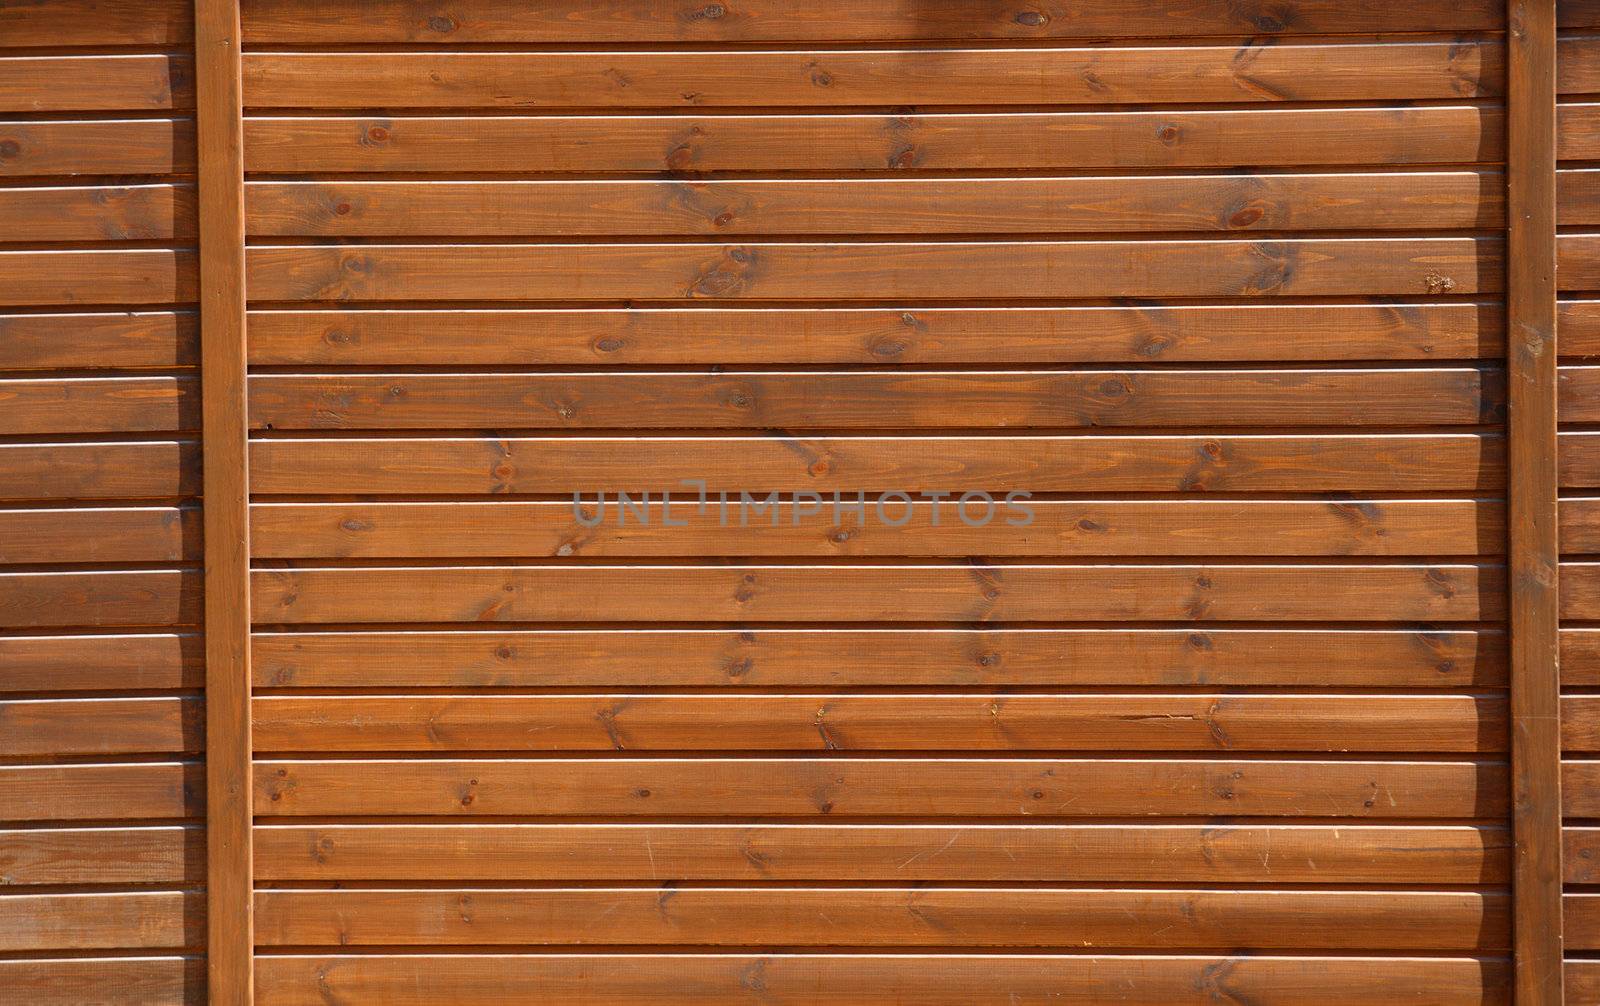 old dark brown wooden planks background